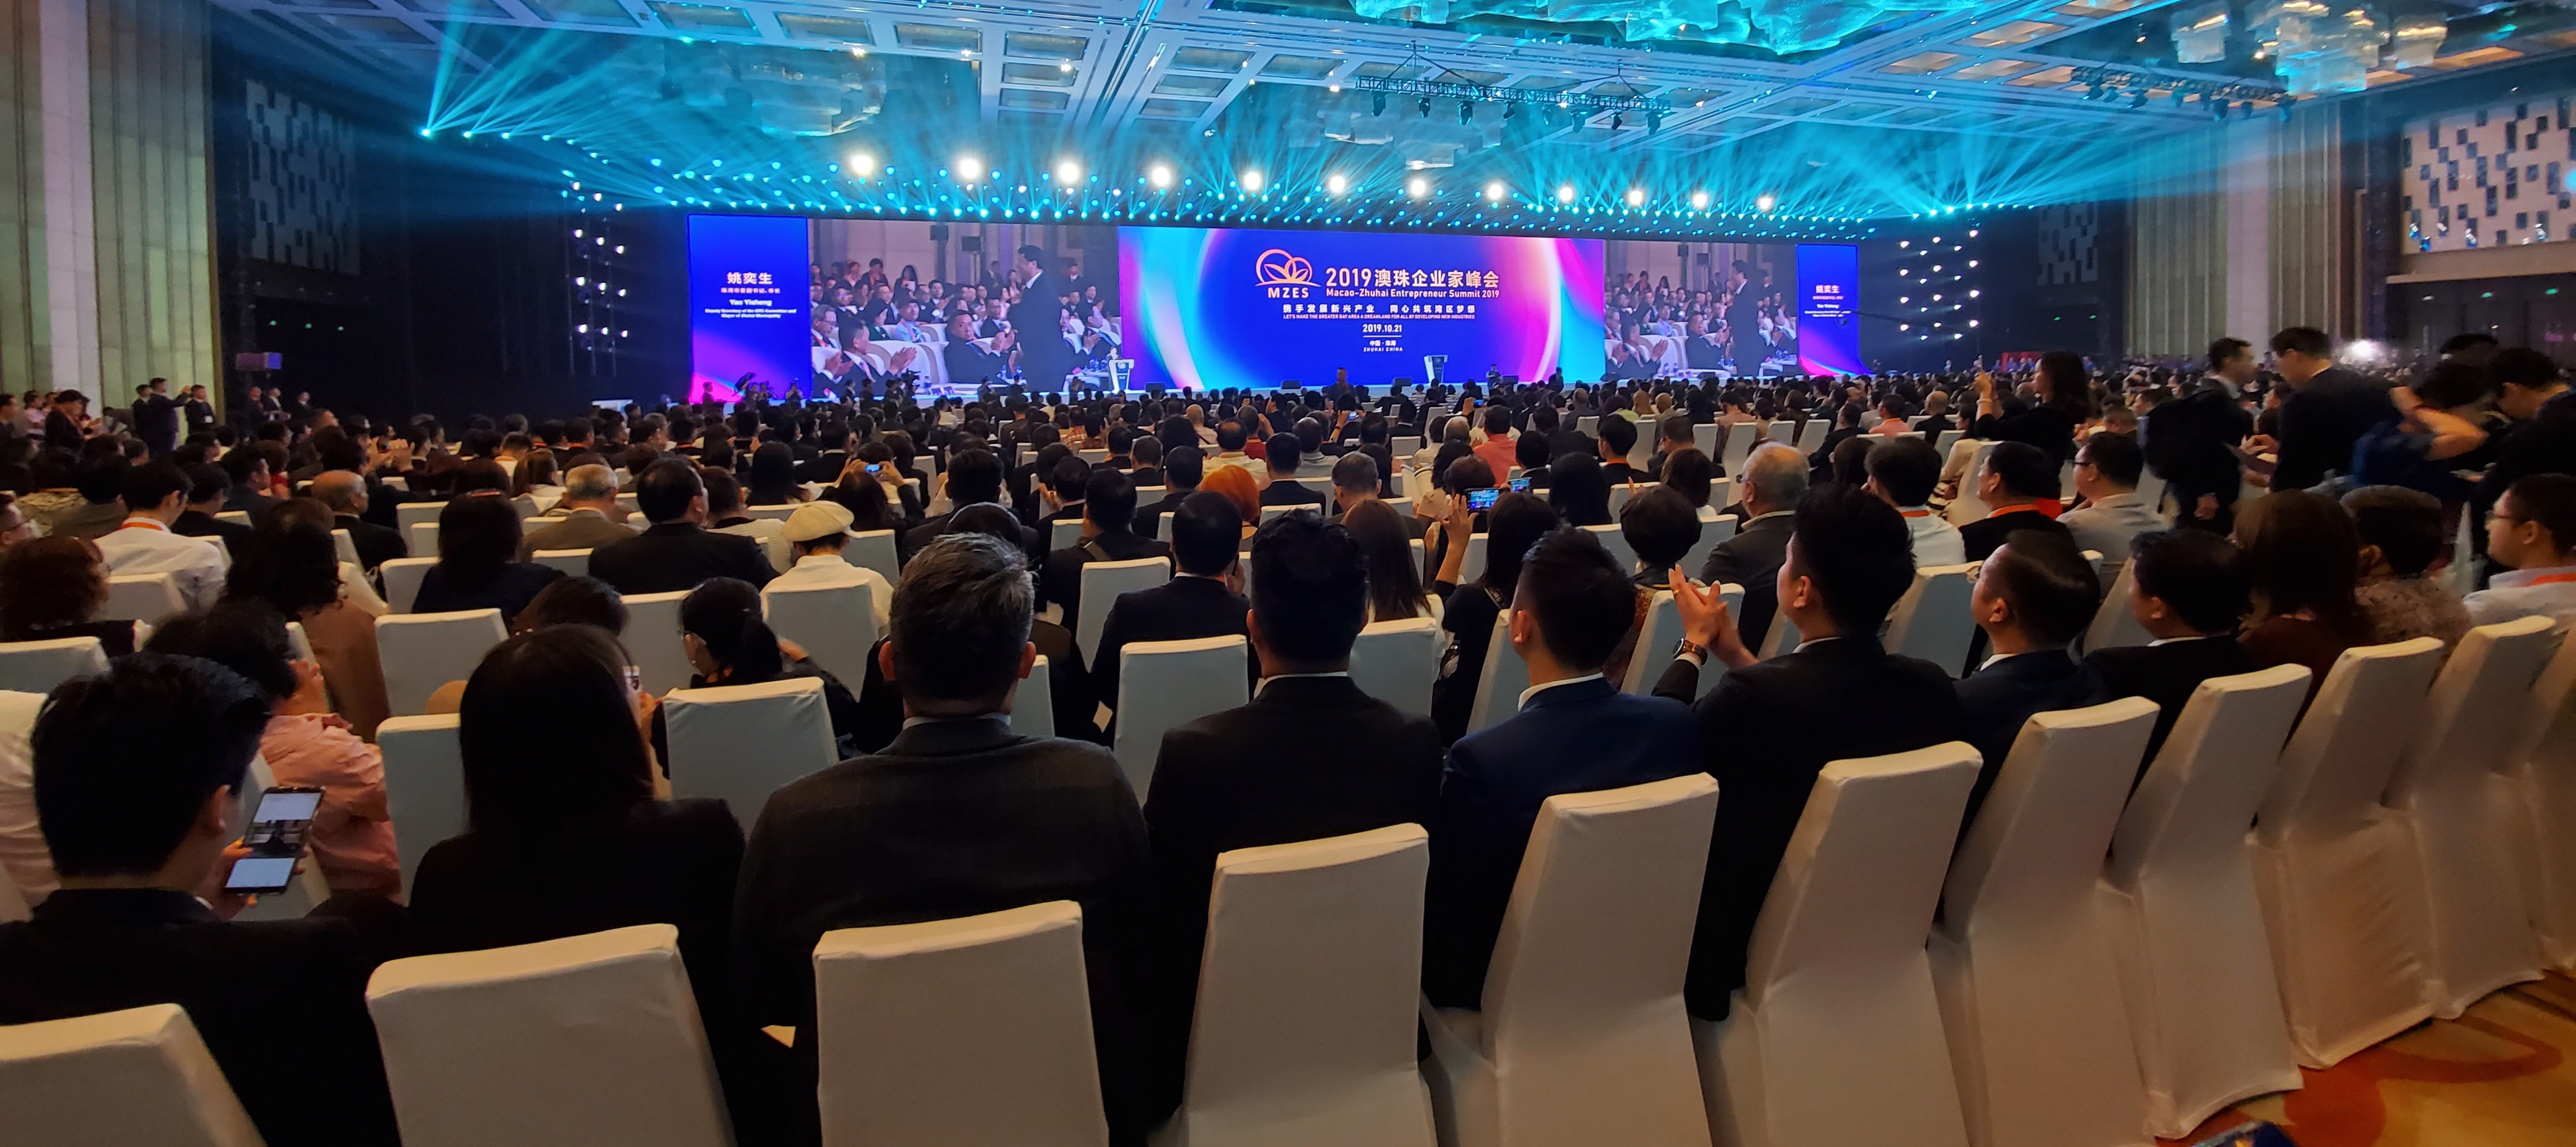 P.55第三排 - 2019澳珠企業家峰會於10月21日在珠海舉行.jpg